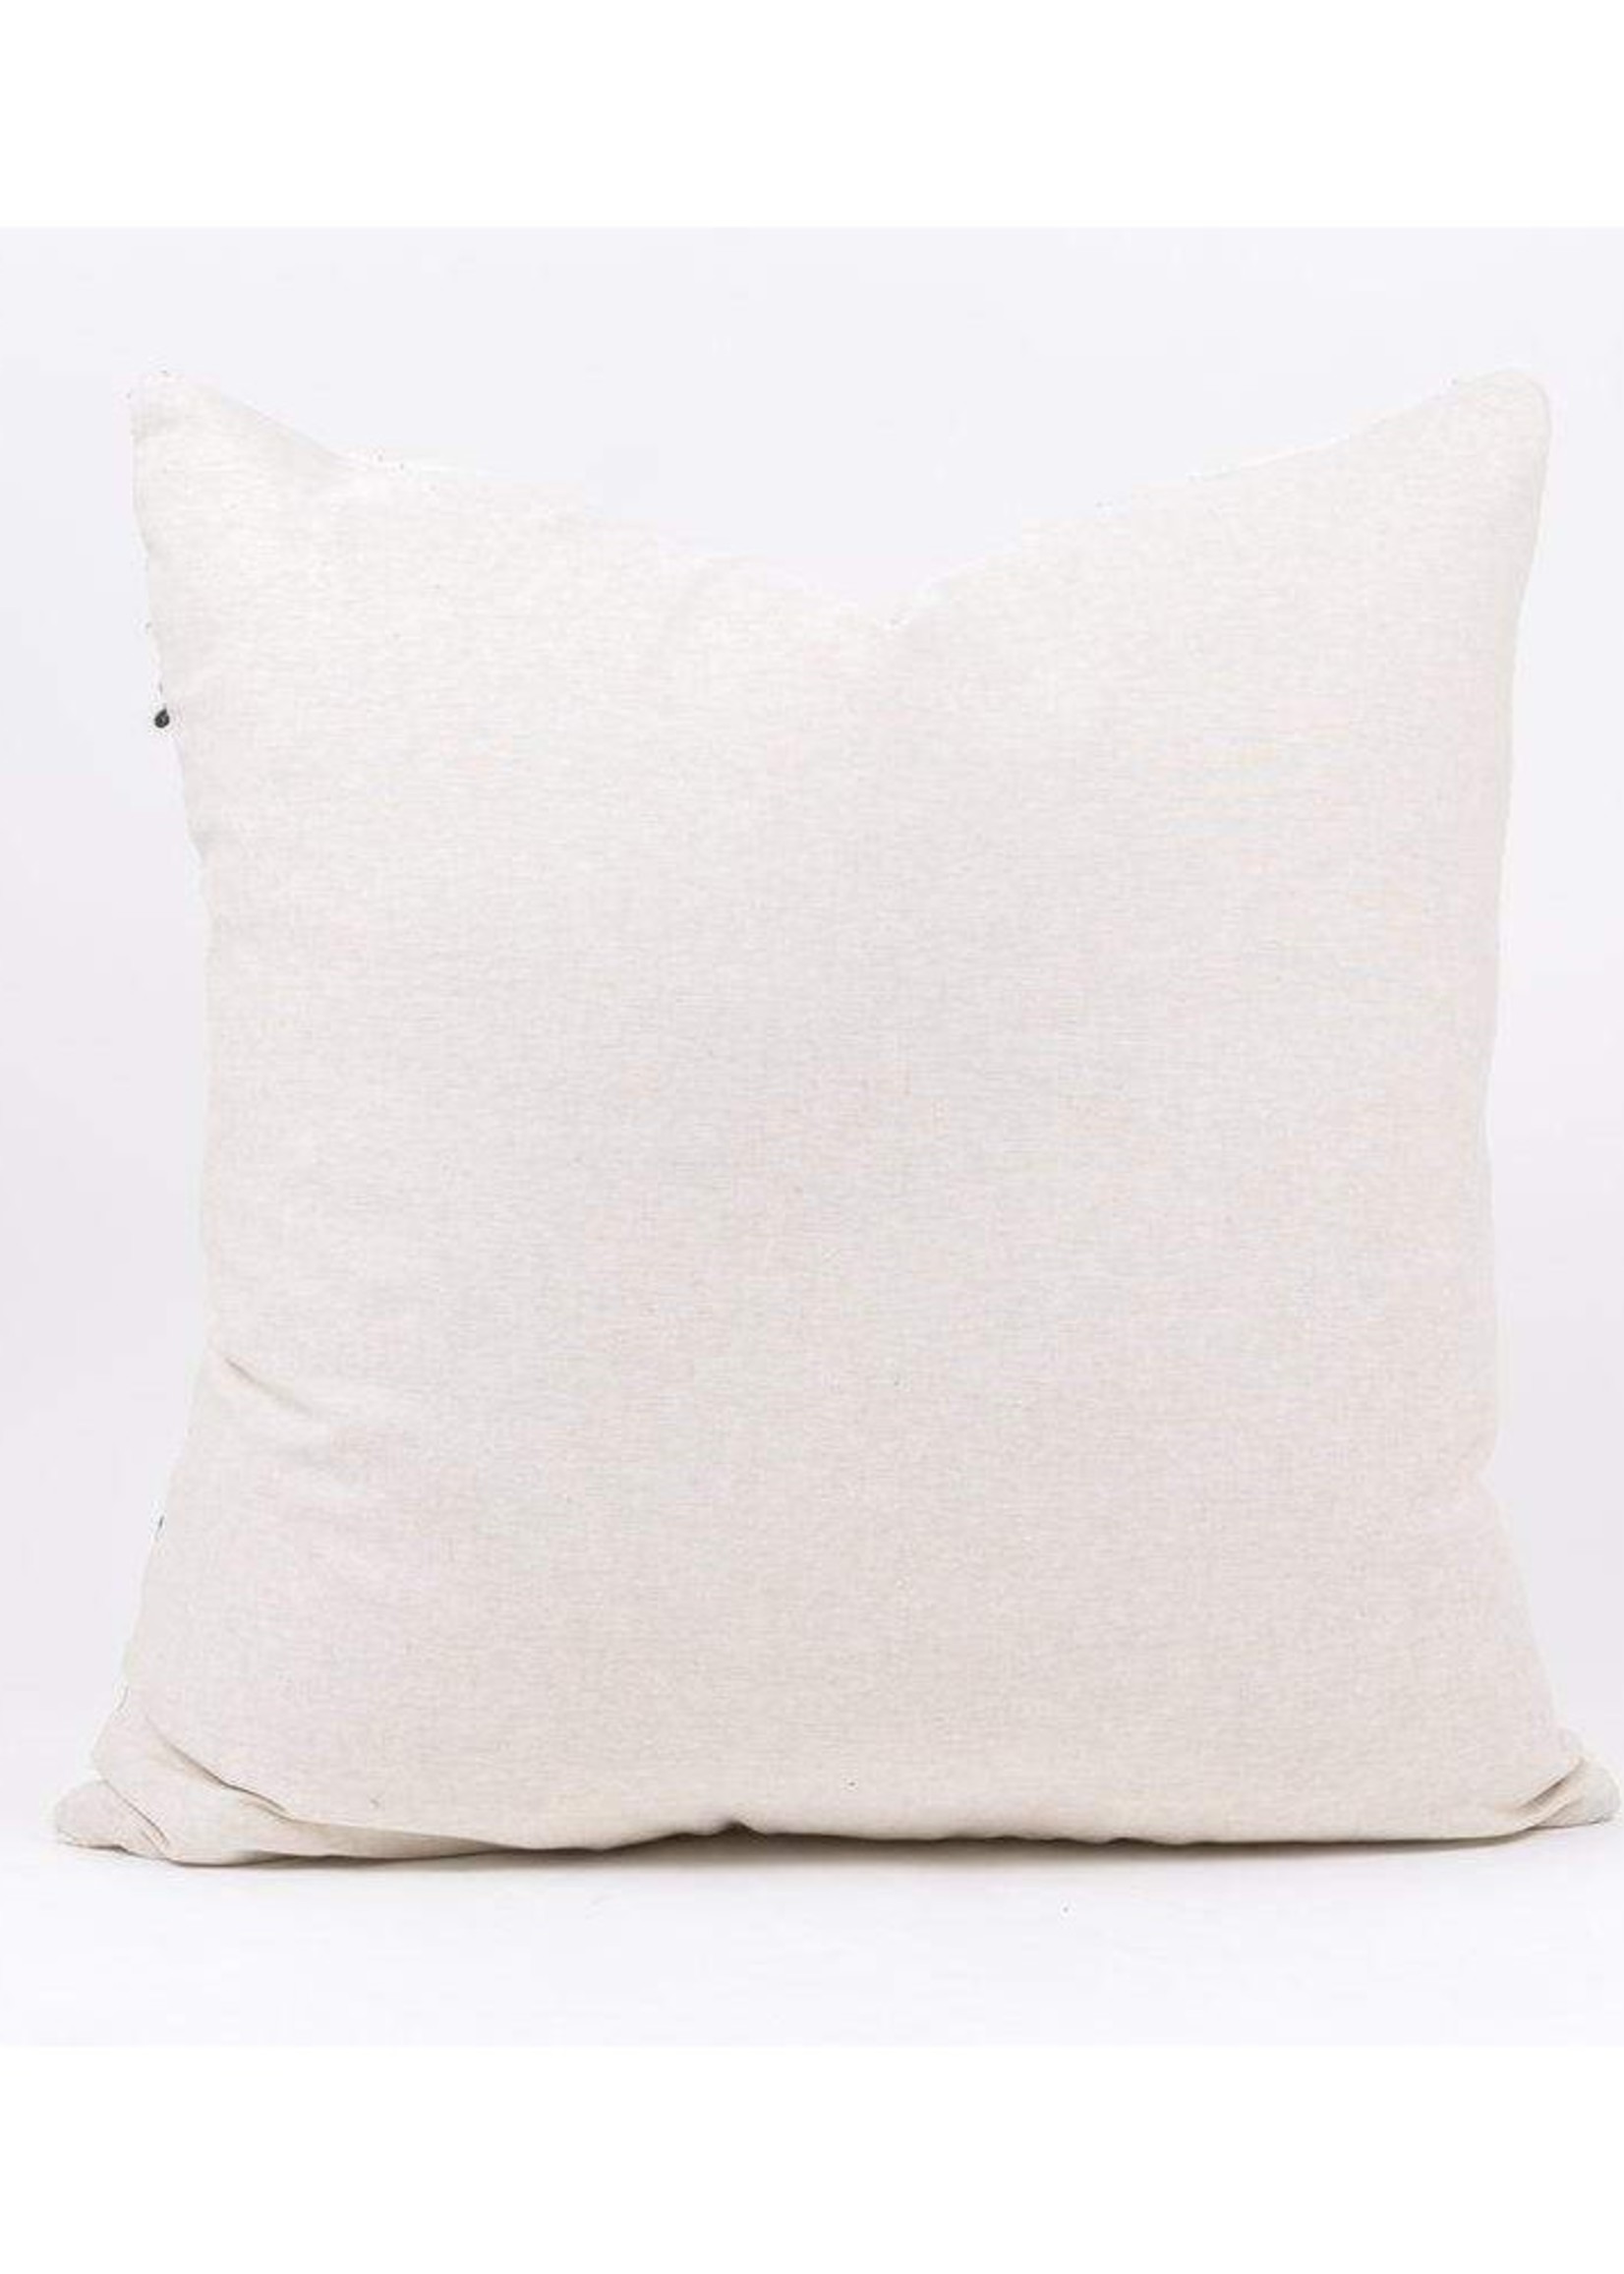 Bryar Wolf BAYO Pillow Throw Pillows White